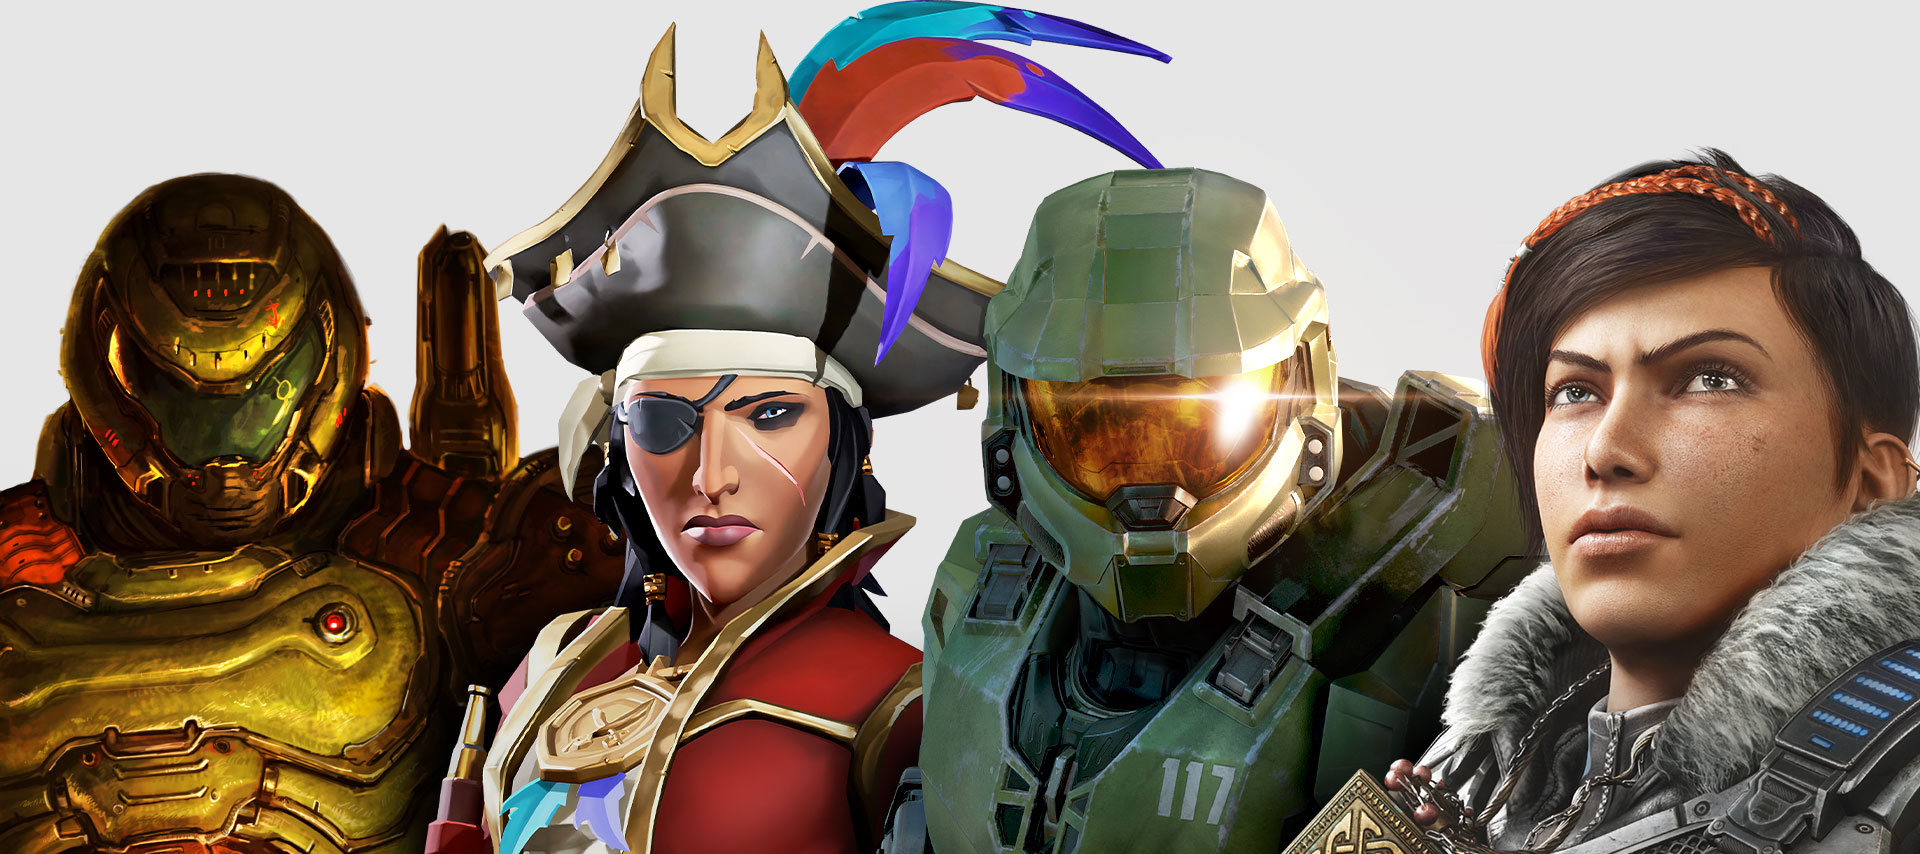 Postavy z her dostupných s předplatným Xbox Game Pass. Zleva doprava: DOOM Eternal, Sea of Thieves, Halo: Infinite a Gears 5.